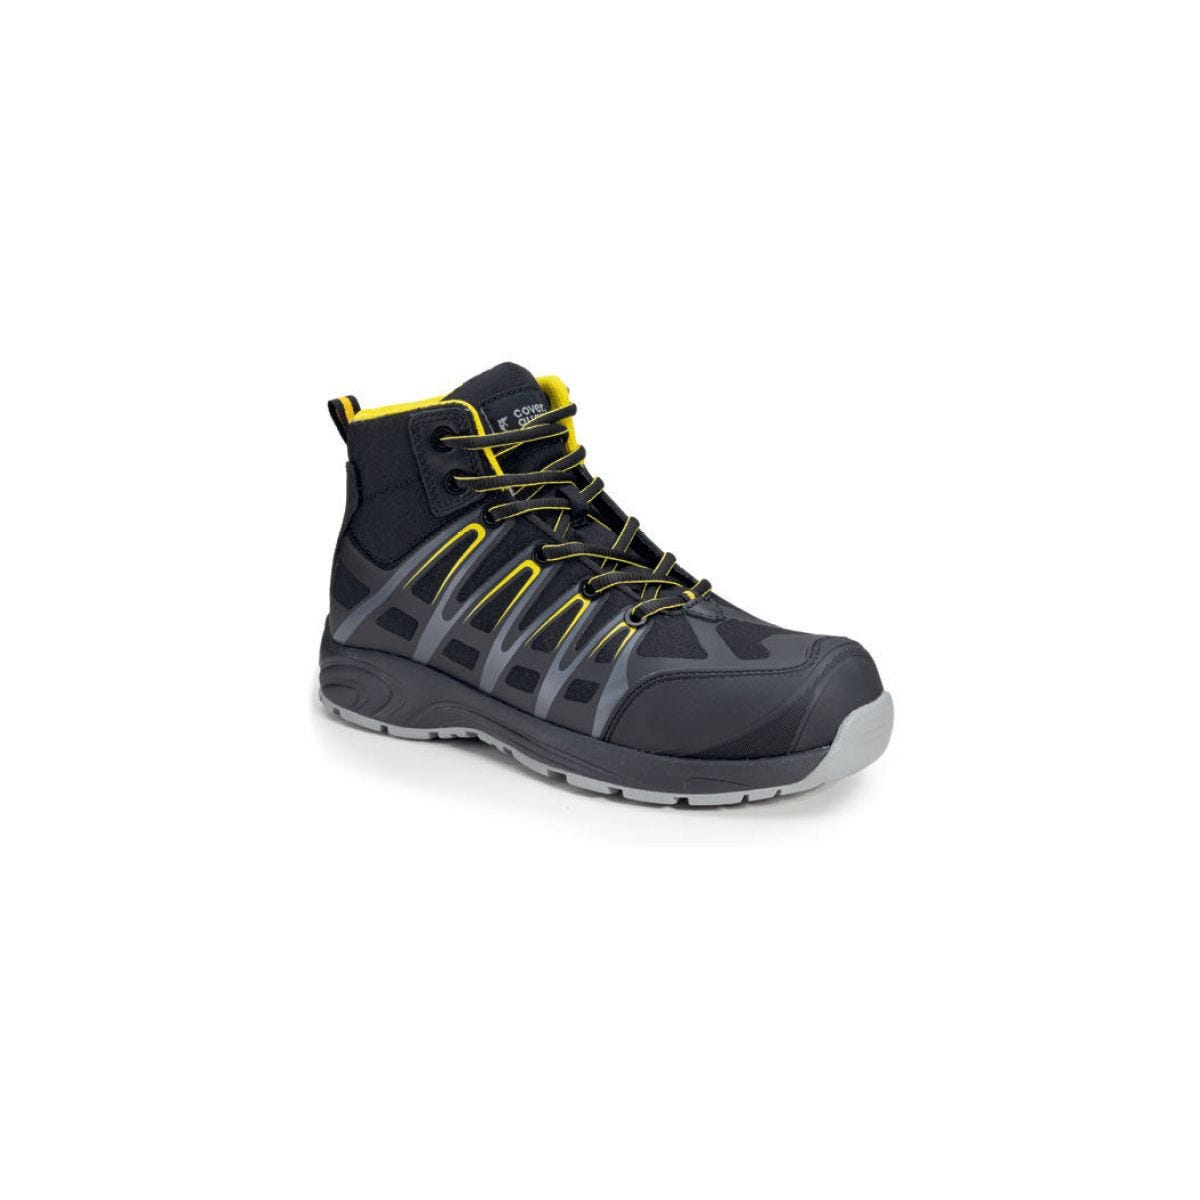 Chaussures de sécurité hautes ALUNI S3 noir et jaune - Coverguard - Taille 39 0